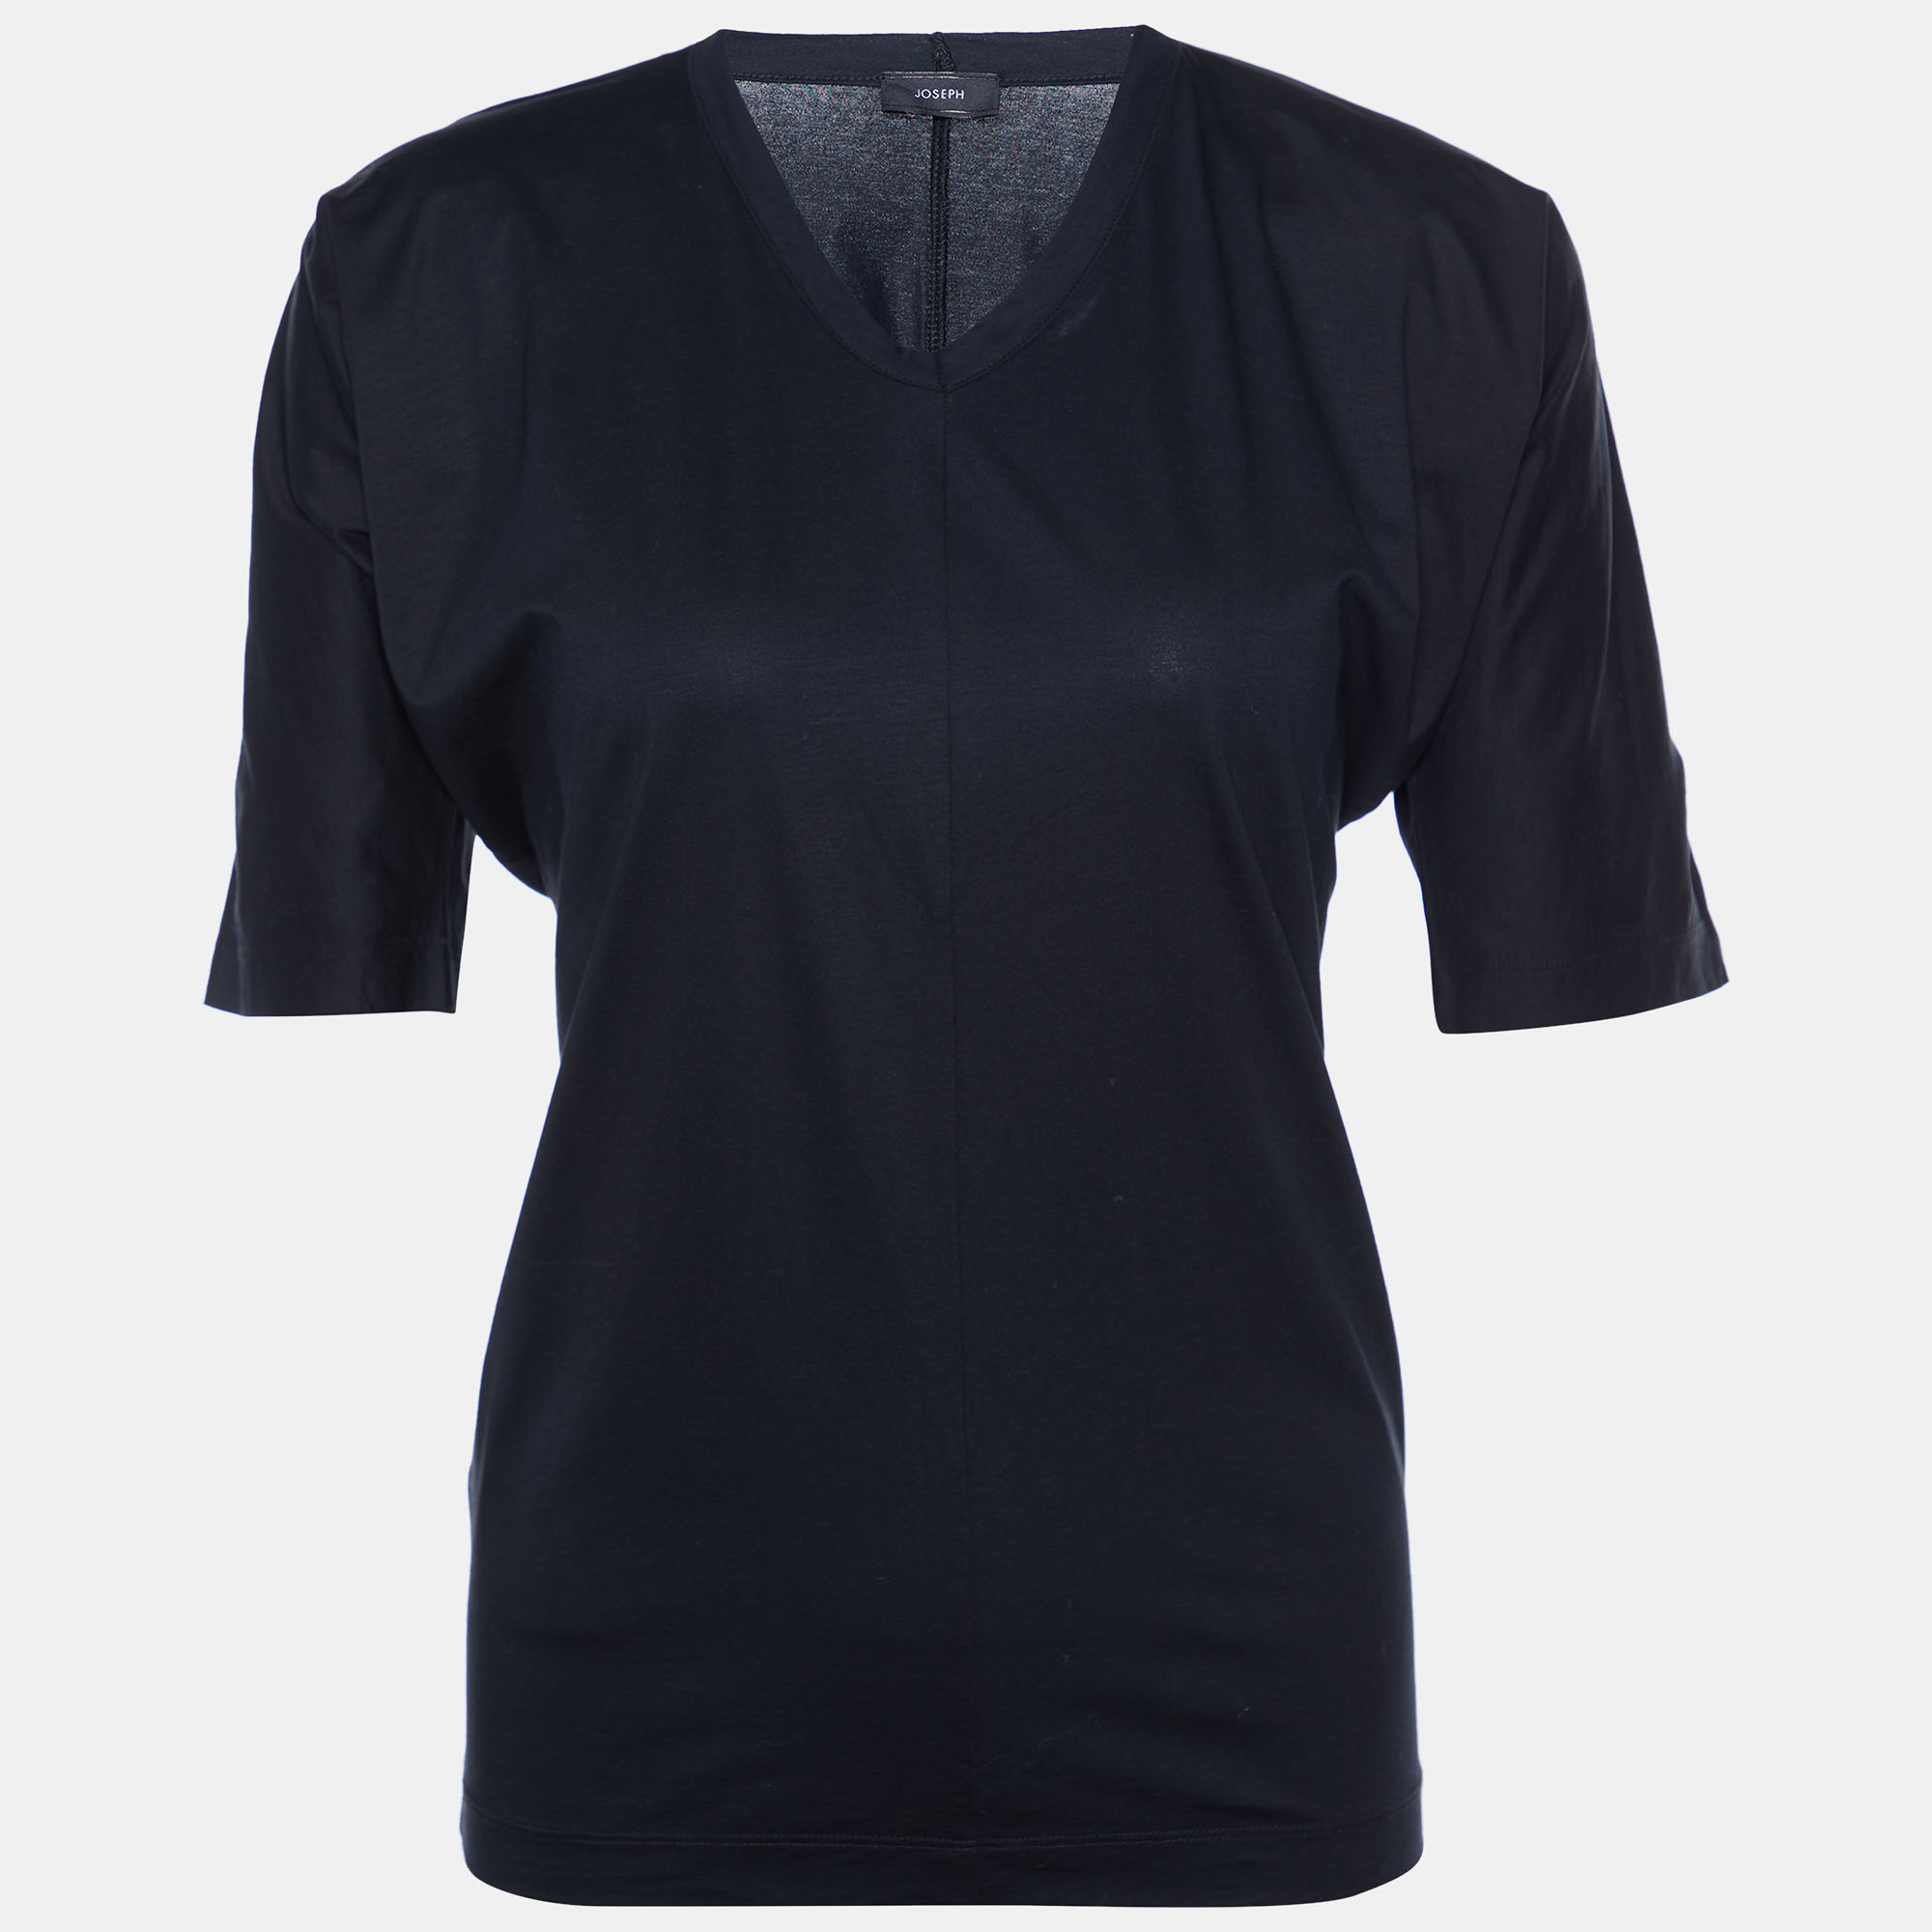 Joseph Black Cotton Knit V-Neck T-Shirt S